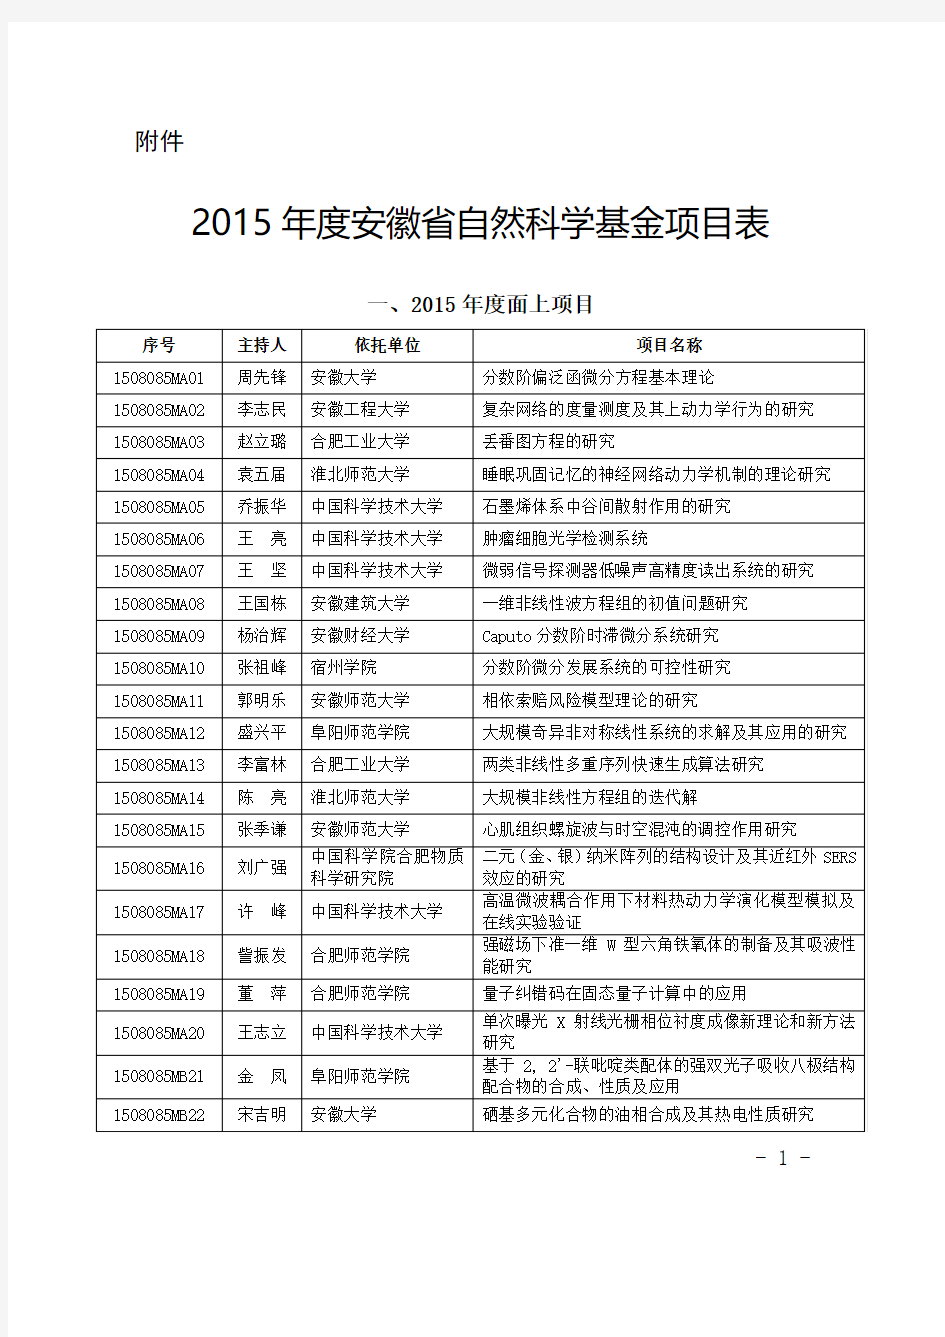 2015年度安徽省自然科学基金项目表